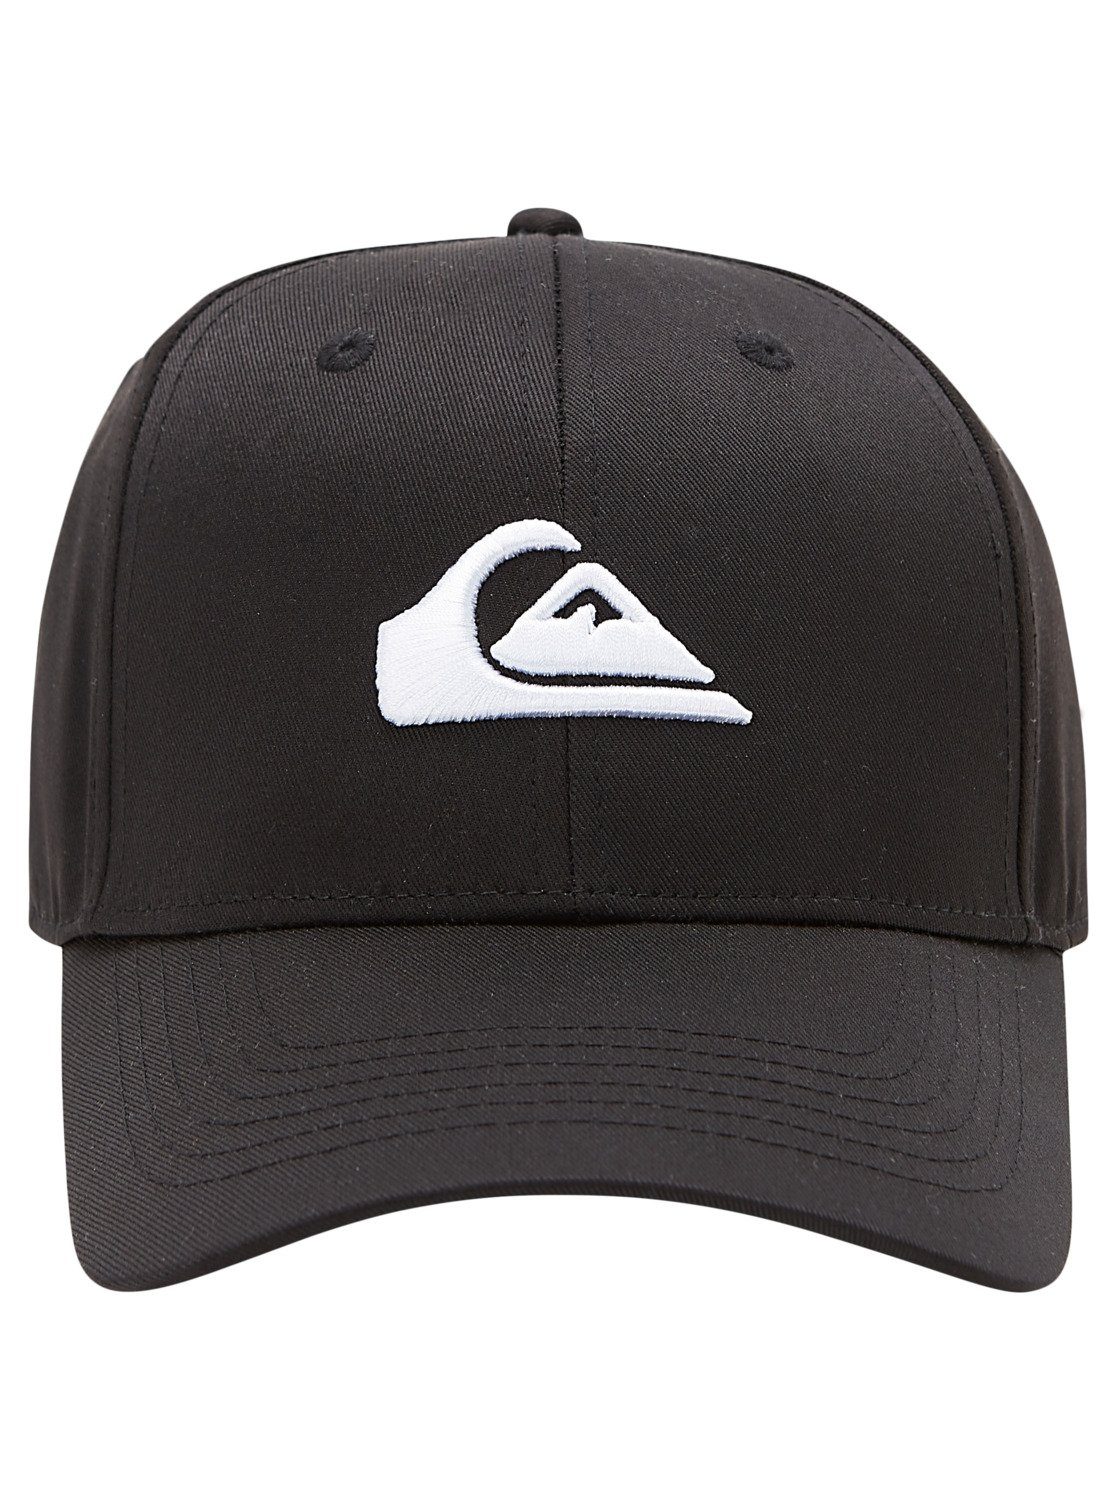 Quiksilver Snapback Cap Decades Black | Snapback Caps